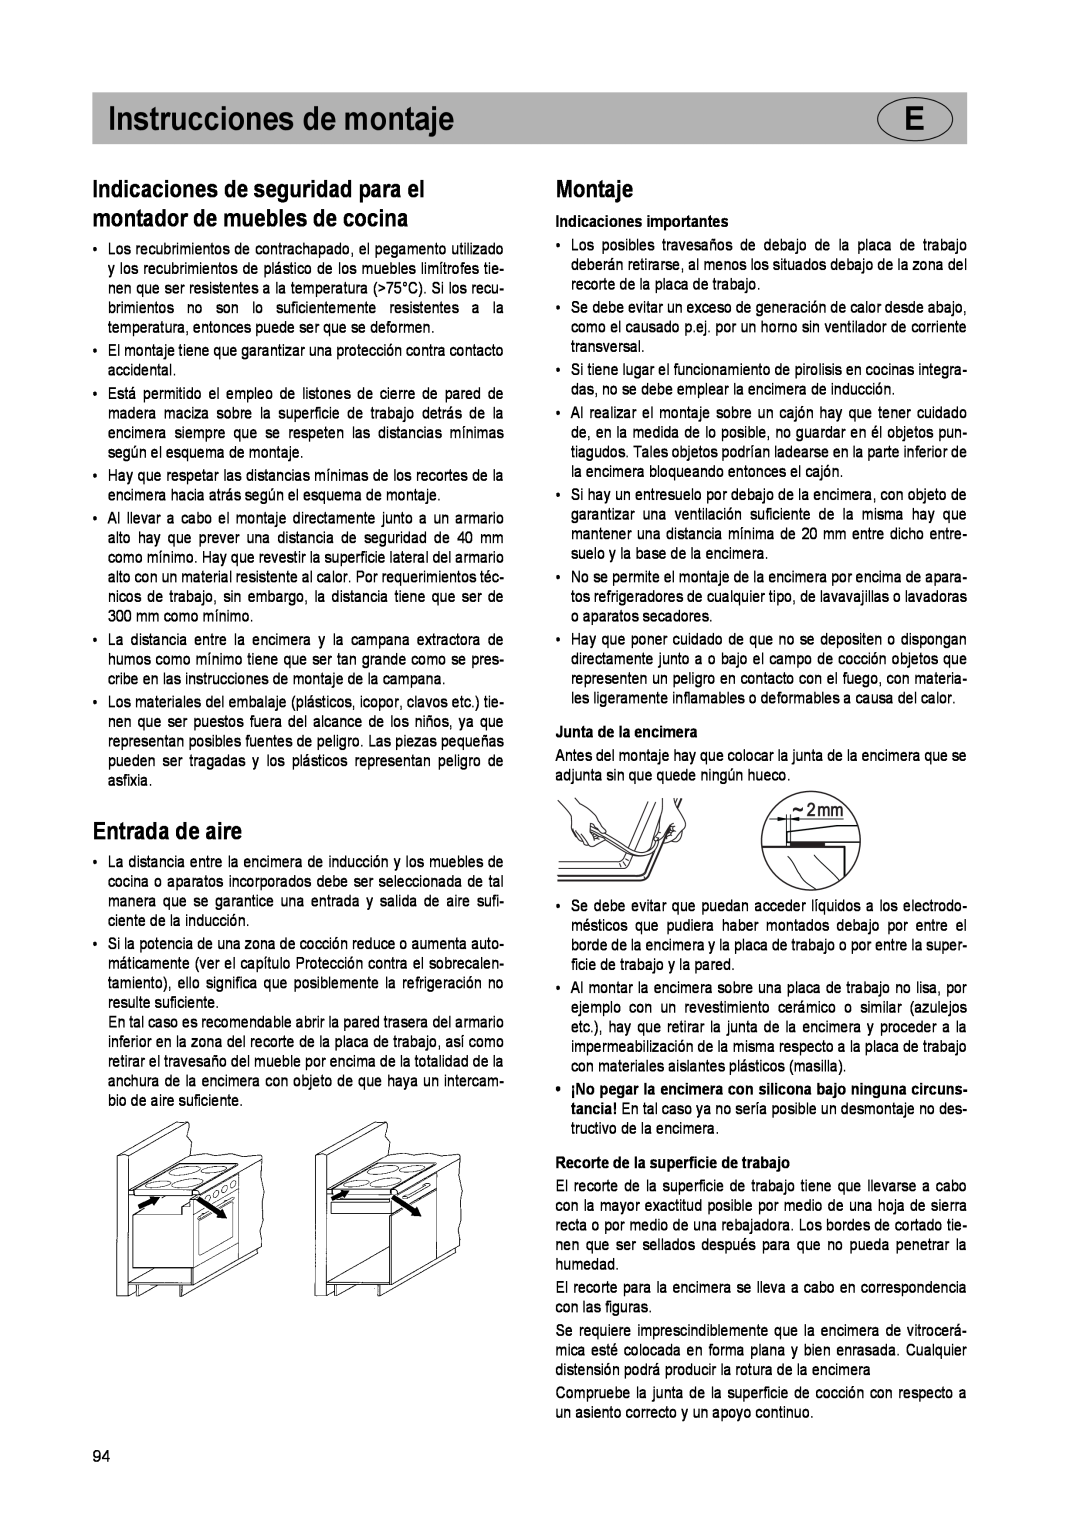 Smeg SE2931ID manual Instrucciones de montaje, Entrada de aire, Montaje, Indicaciones importantes, Junta de la encimera 